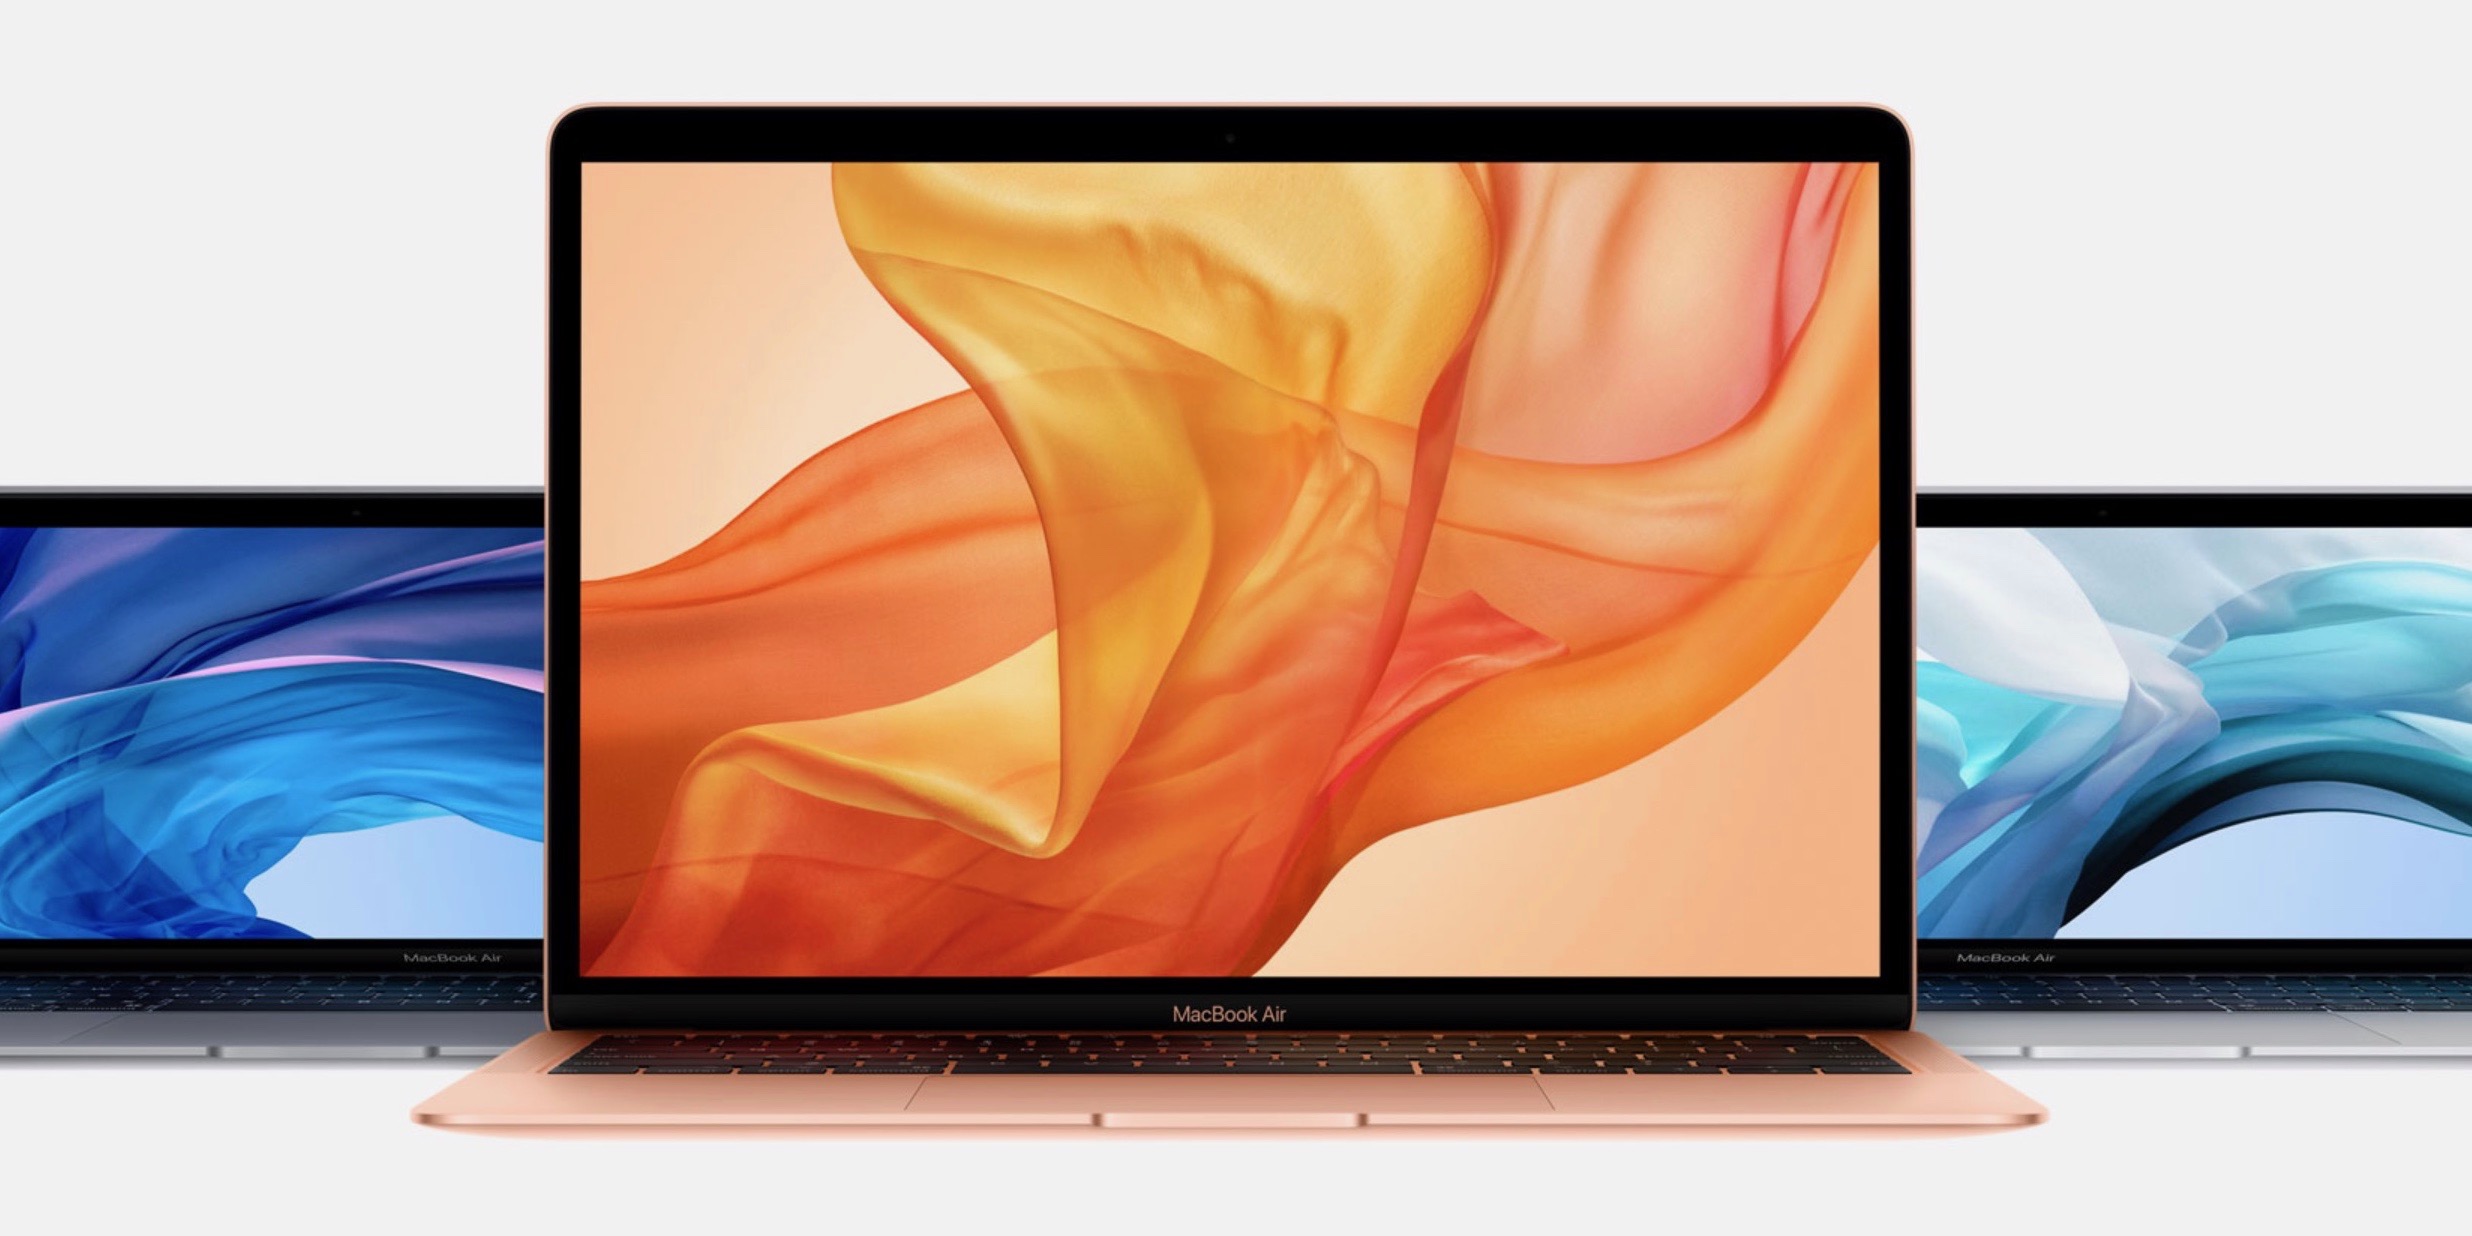 macbook air 2017 retina display